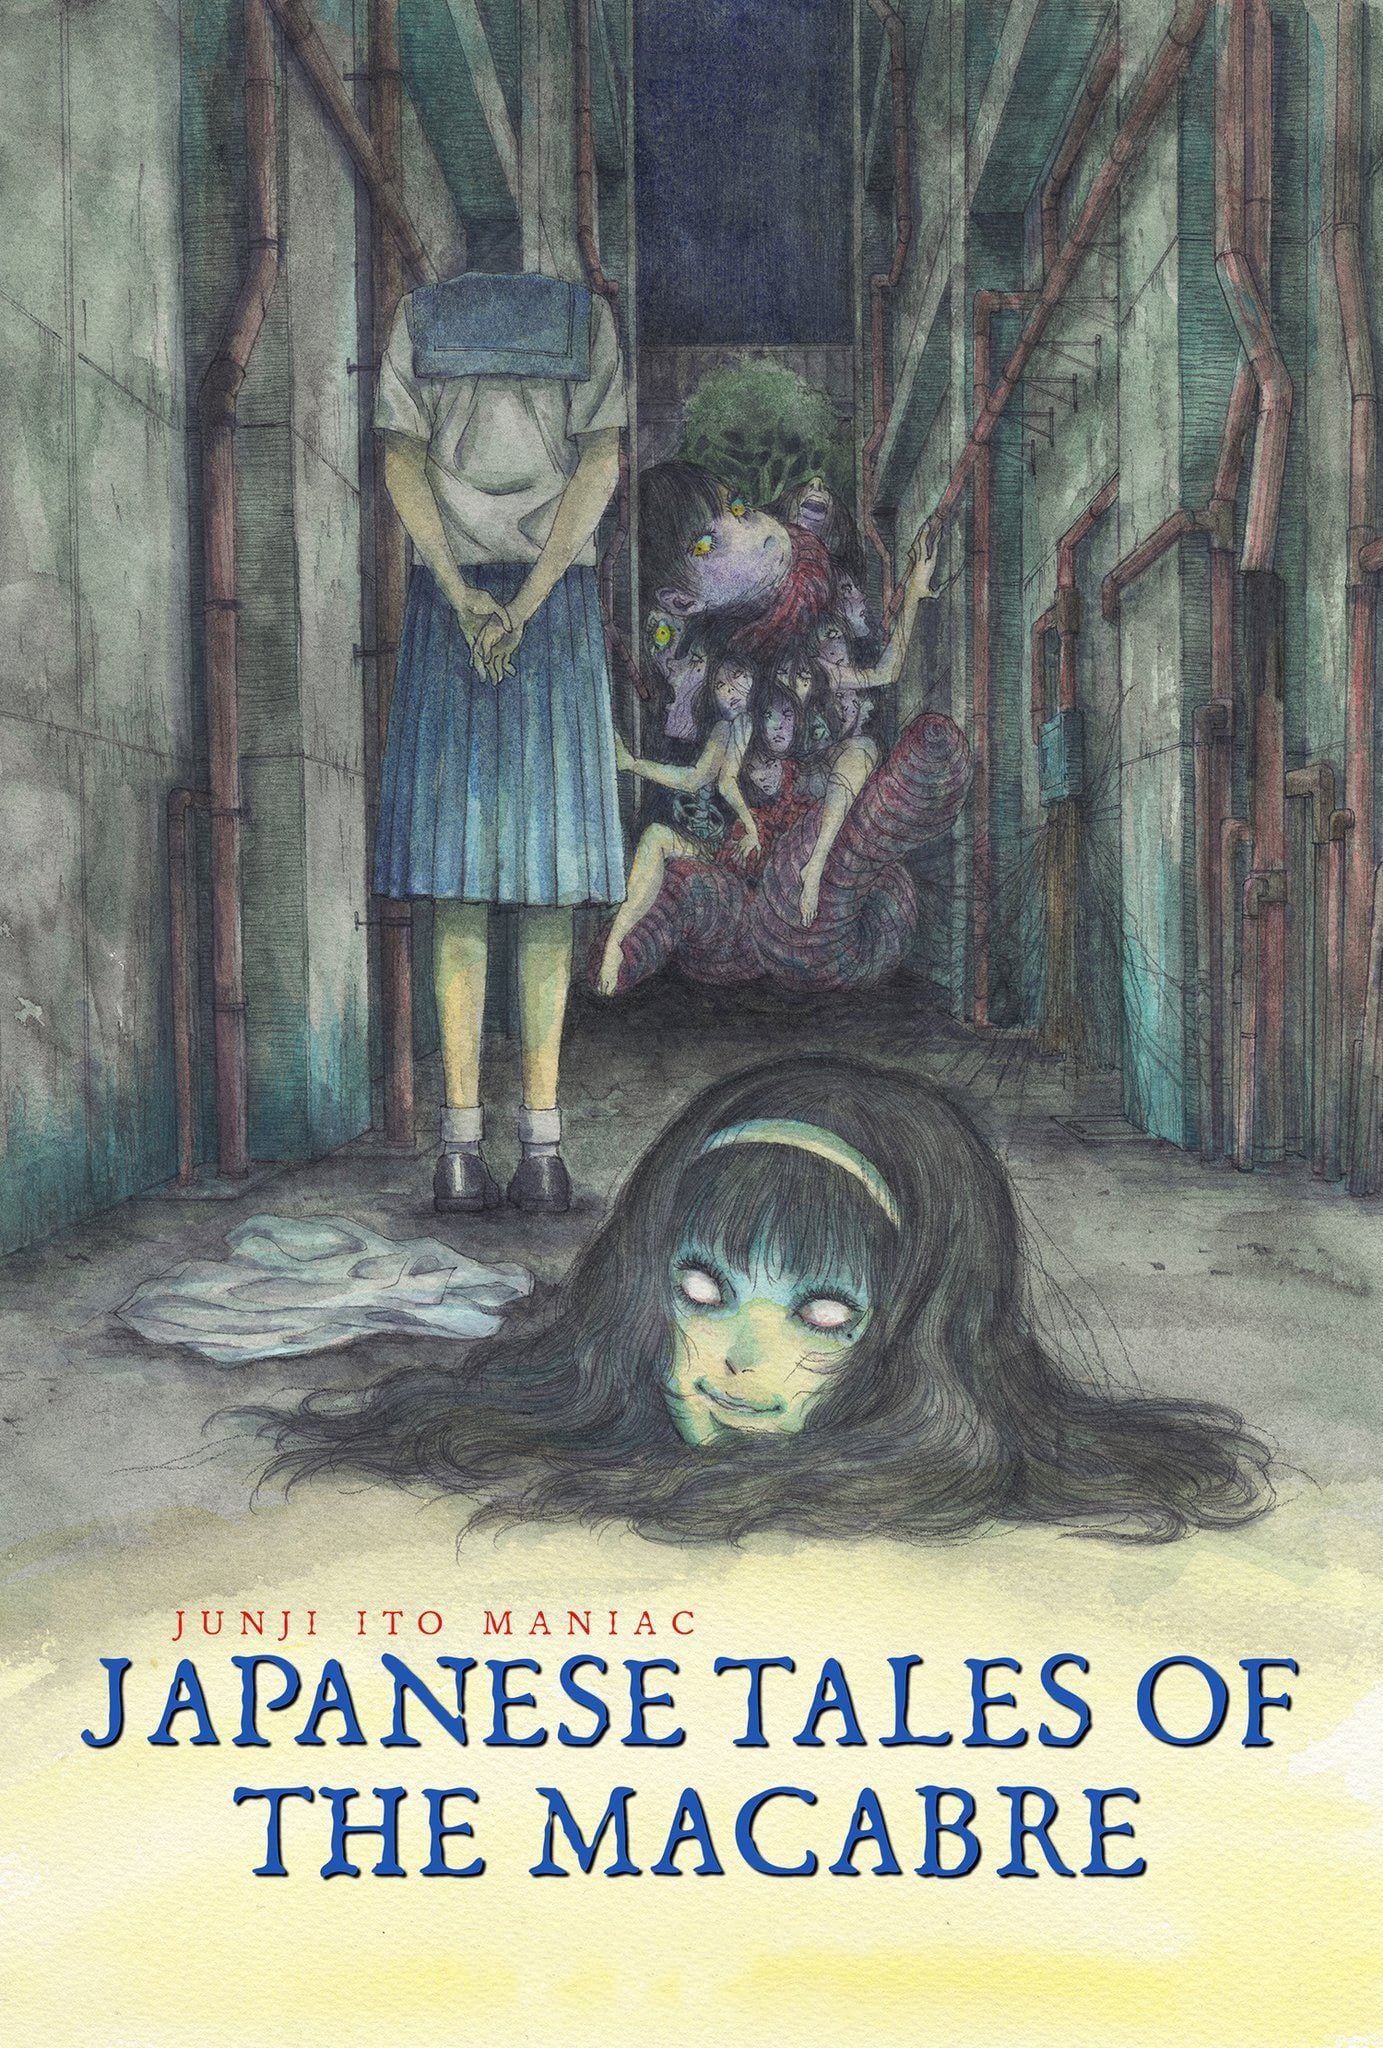 Junji Ito: Histórias Macabras do Japão